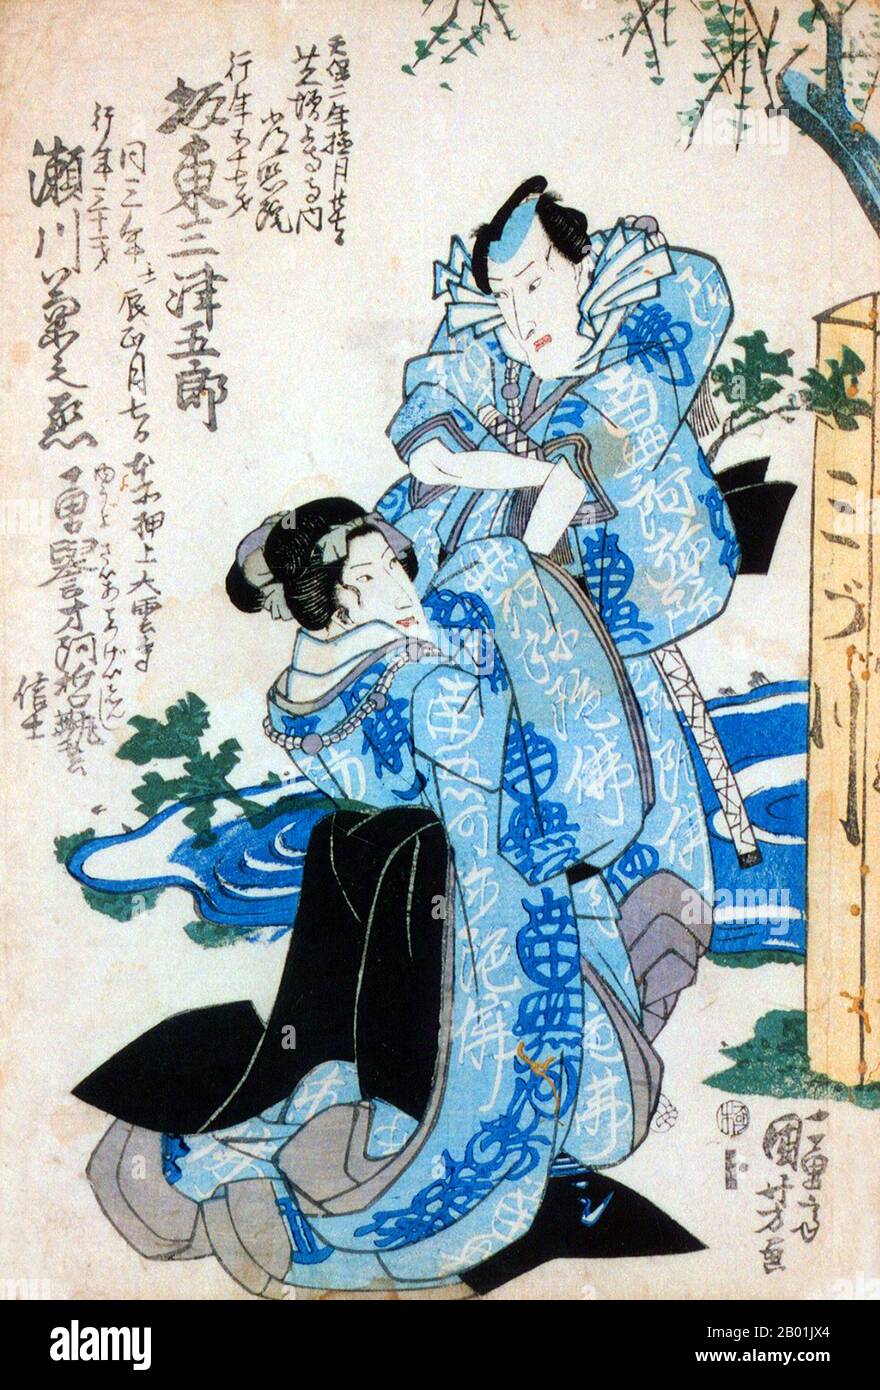 Japon : deux acteurs, Bandô Mitsugorô III (ci-dessus) et Segawa Kikunojô V. estampe commémorative 'Shini-e' par Utagawa Kuniyoshi (1 janvier 1798 - 13 avril 1861), 1832. Les gravures commémoratives, également appelées gravures de la mort et shini-e commémoraient la mort d'acteurs, d'artistes et de musiciens, mais la grande majorité commémorait des acteurs kabuki. Ils représentent généralement l'acteur récemment décédé en robe bleu clair (shini sôzoku), et incluent souvent des informations telles que la date de décès, l'âge, le nom bouddhiste posthume (kaimyô) et le lieu d'enterrement. Banque D'Images